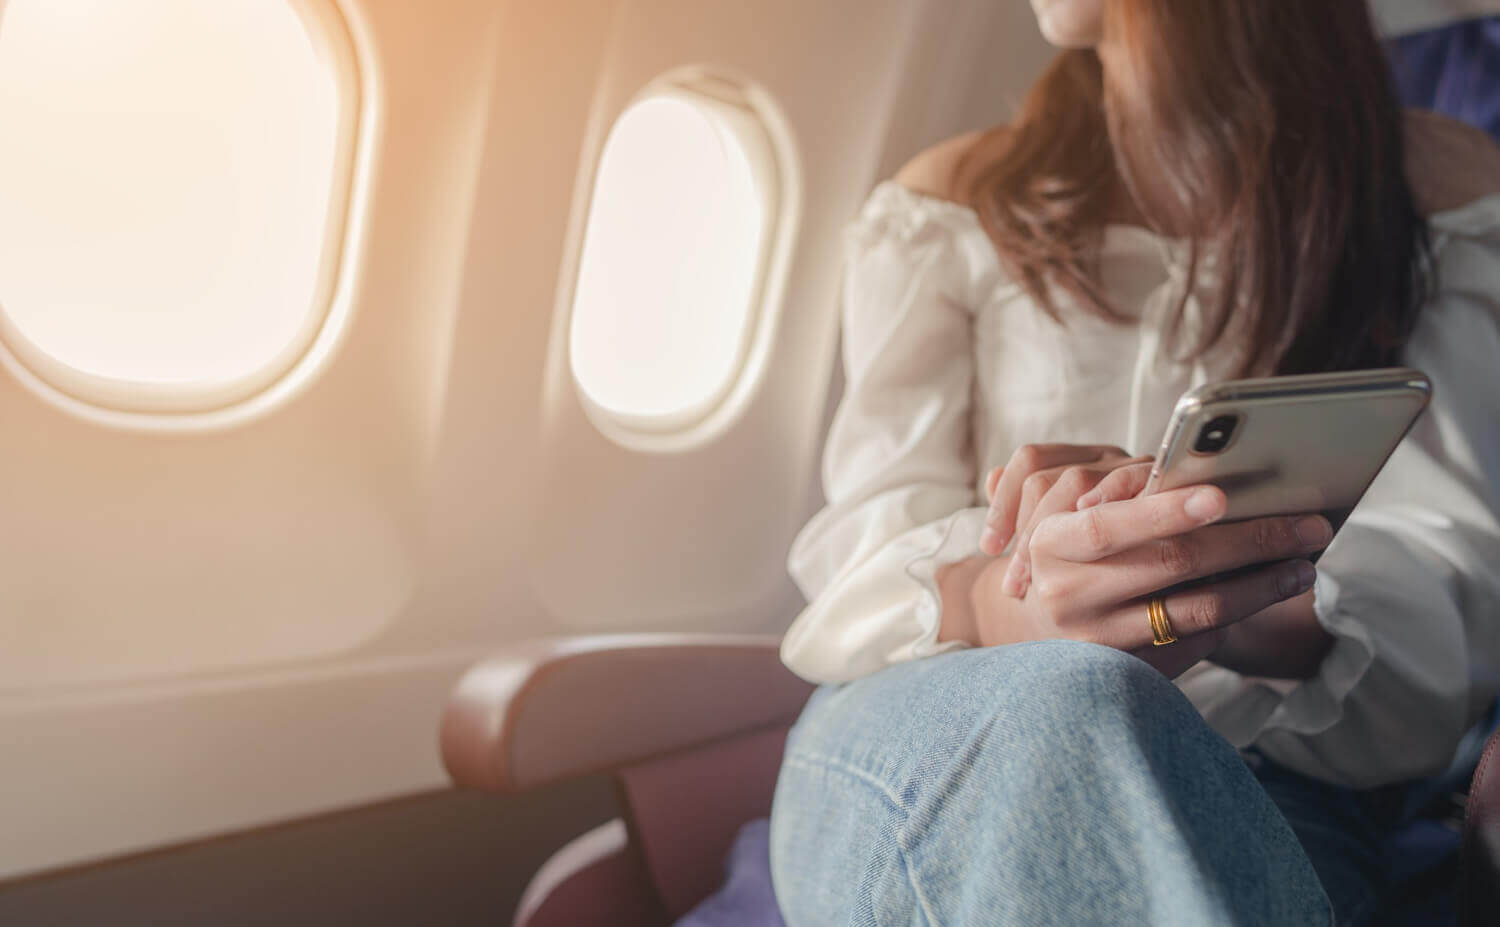 kobieta, która zastanawia się, czy w samolocie można używać telefonu